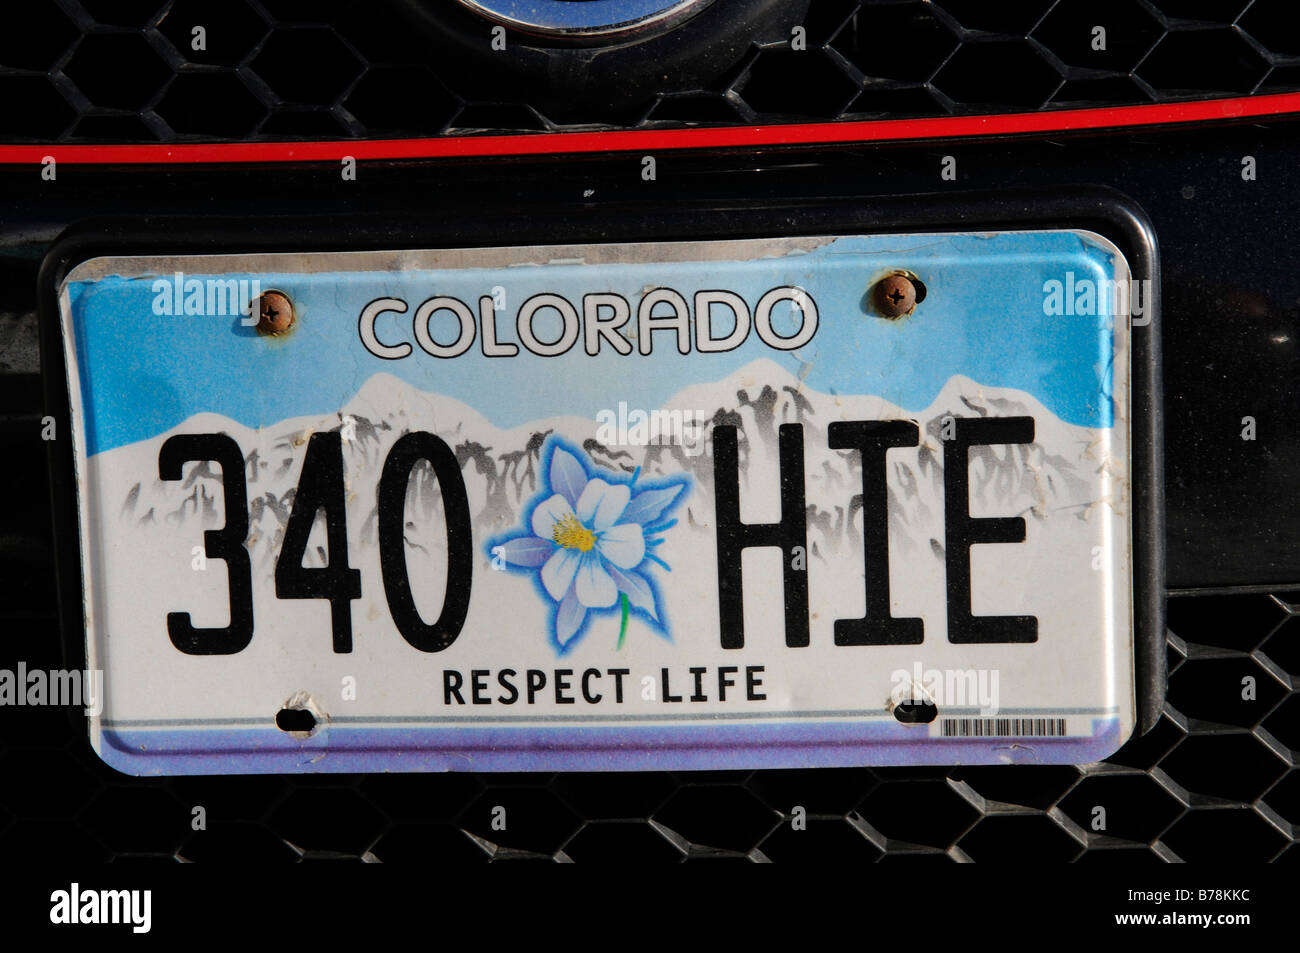 USA-Kennzeichen license plate, California.1 als Aufkleber, 2